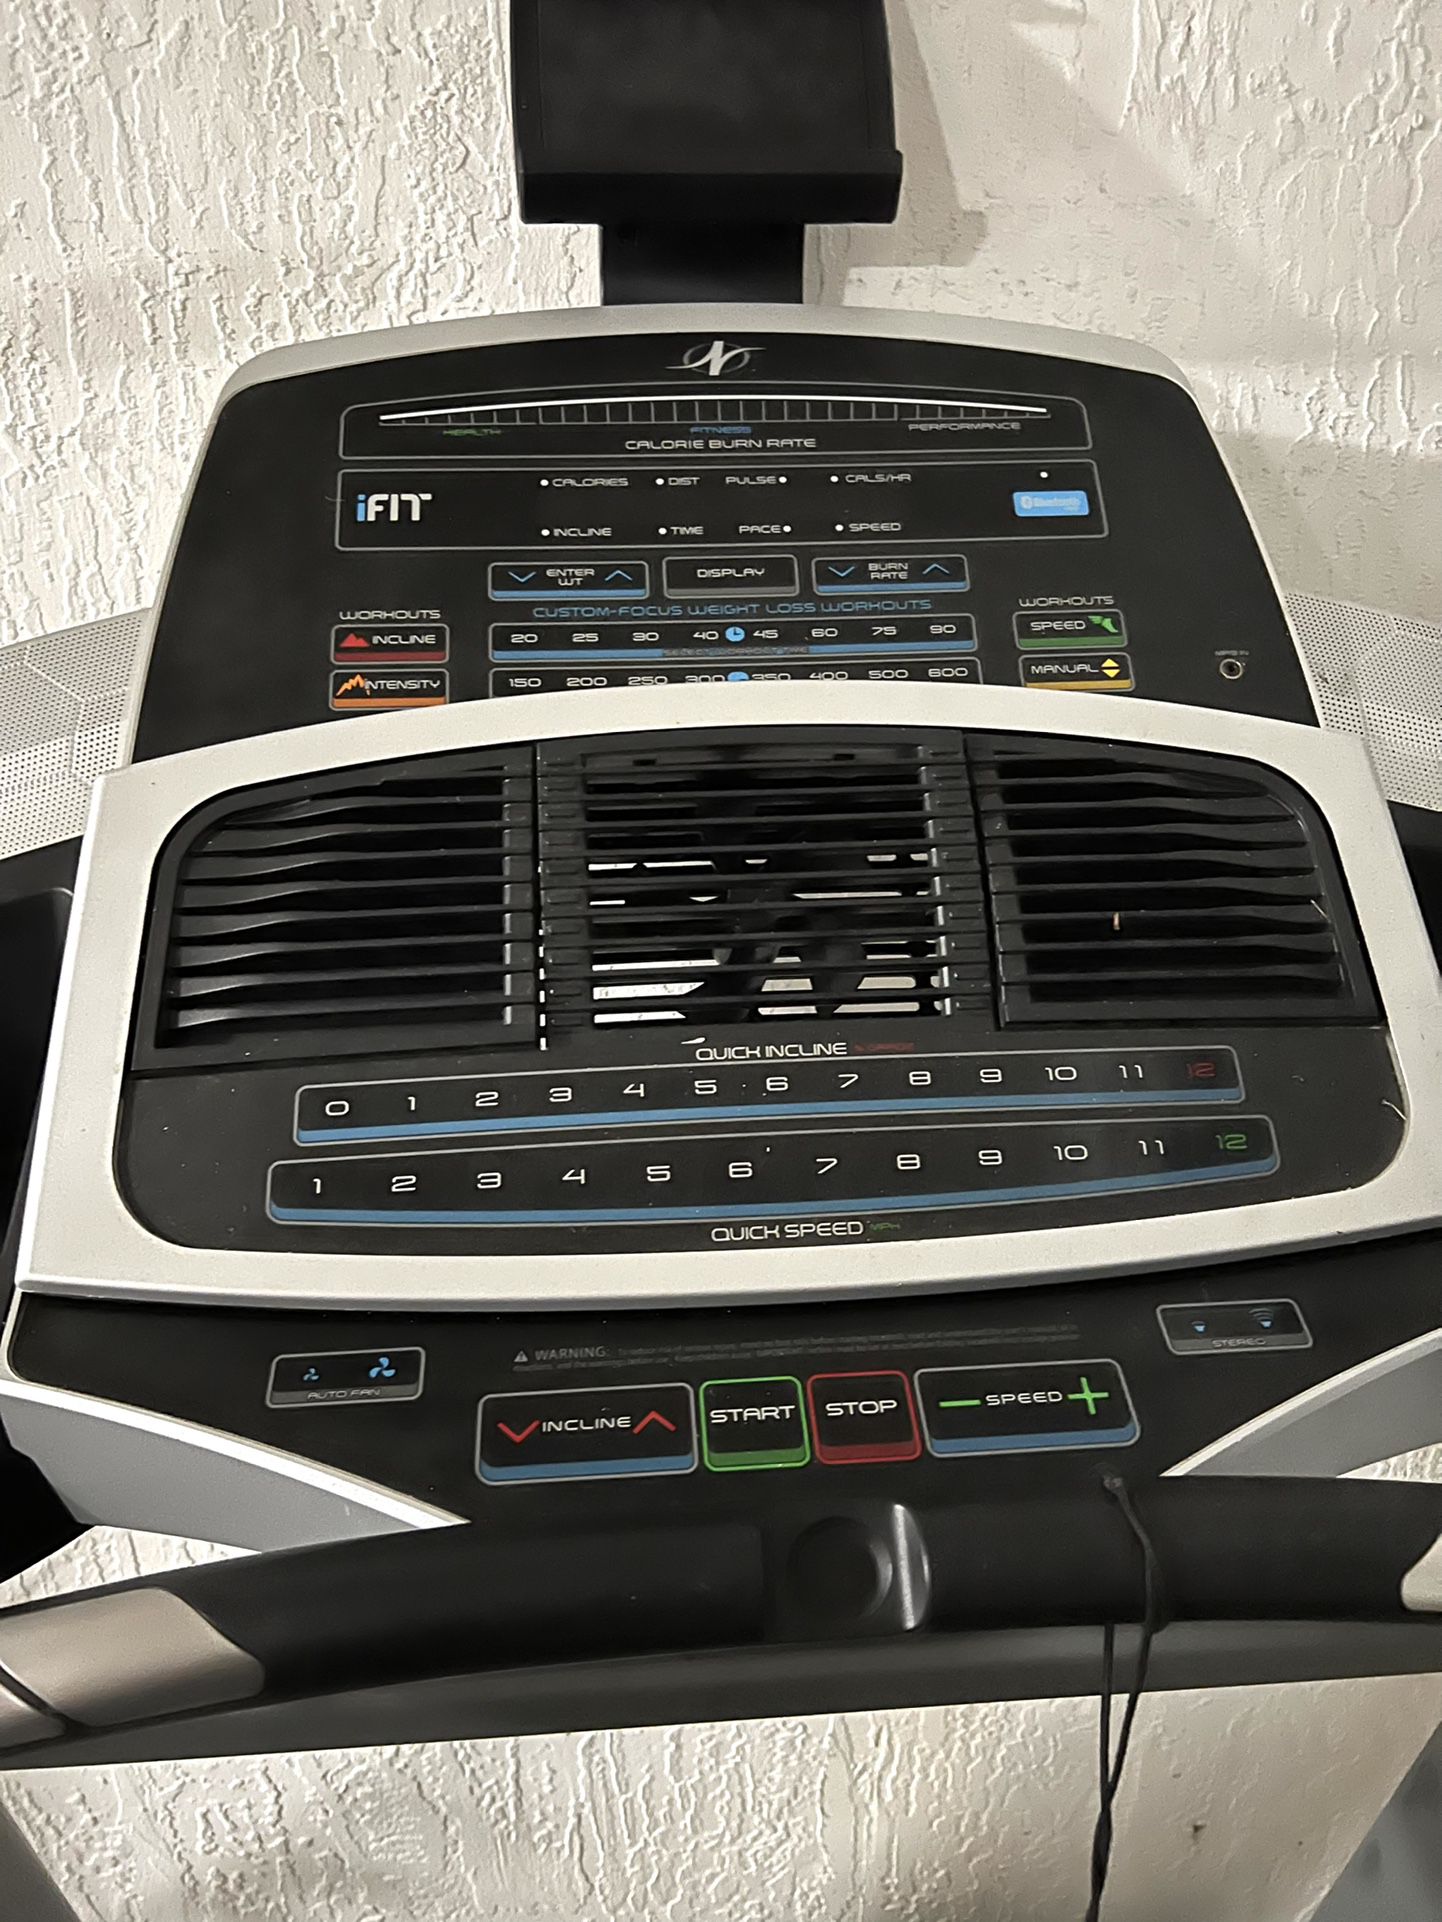 Nordictrack Treadmill C950i